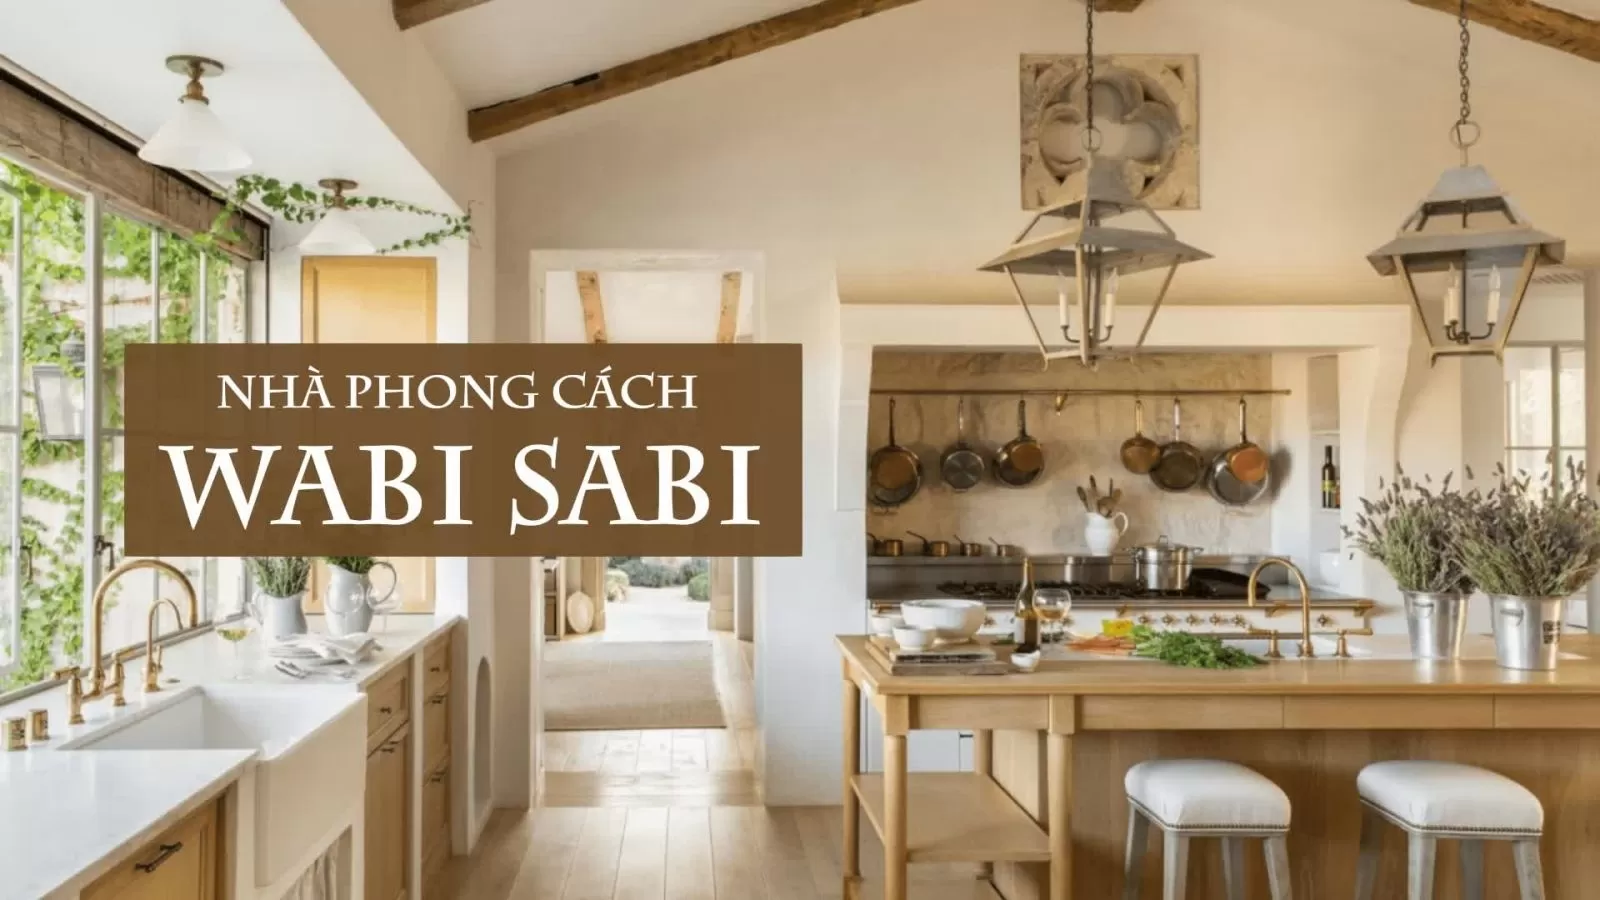 Thiết kế phong cách Wabi Sabi có đặc điểm gì nổi bật